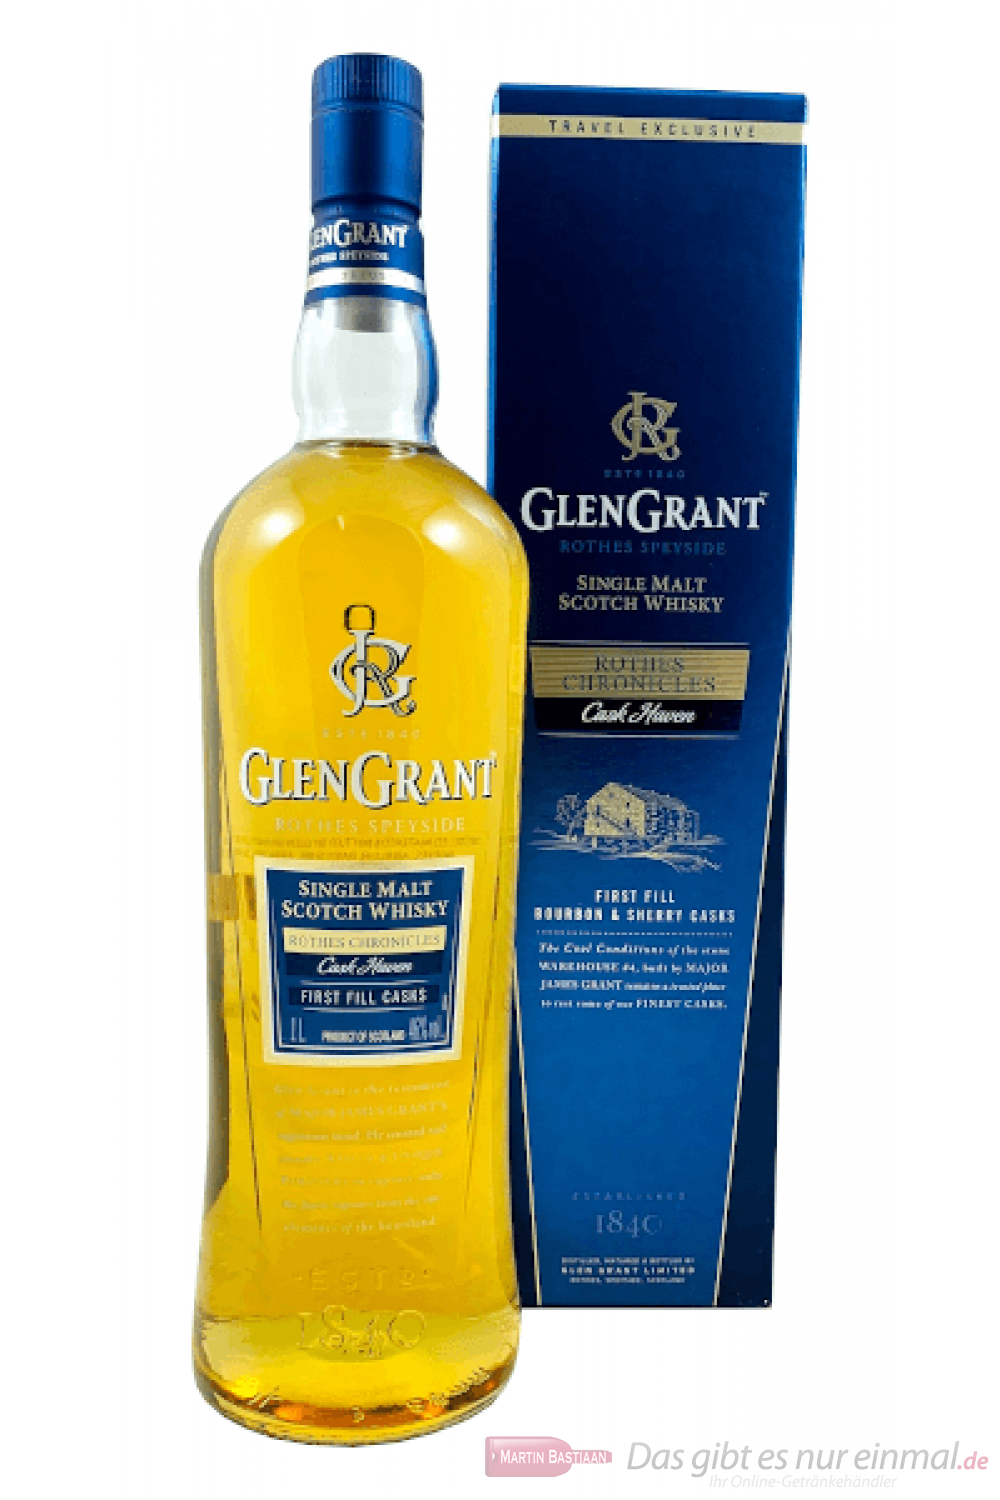 Glen Grant Cask Haven Single Malt Scotch Whisky 1,0l